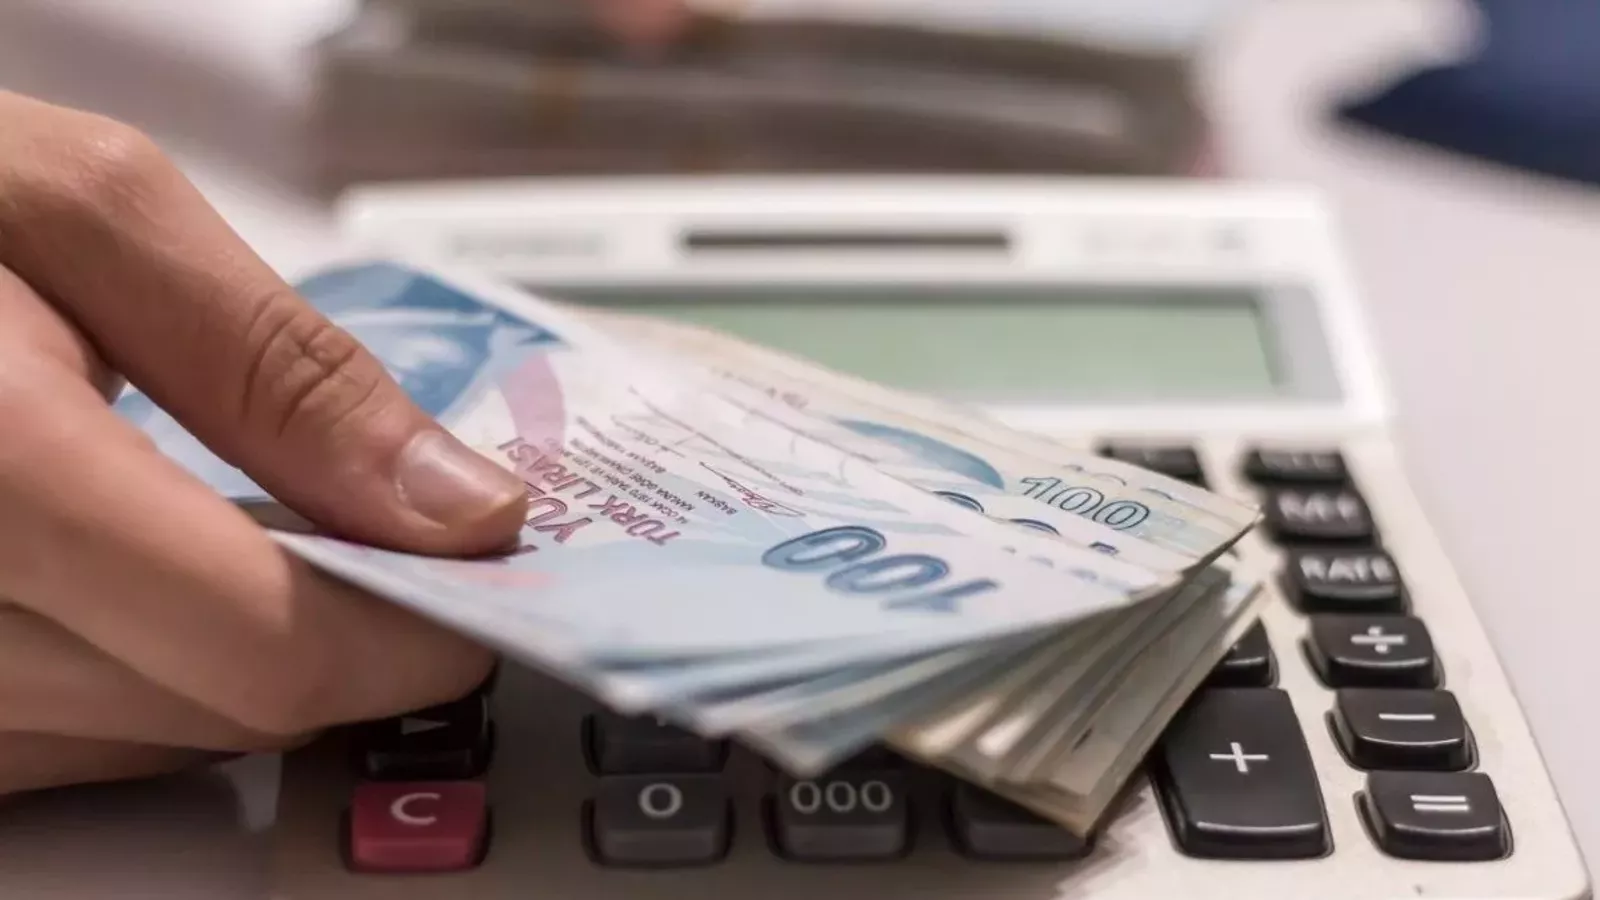 Halkbank'tan 2 Günde Nakit İhtiyacınıza Çözüm: Hızlı Kredi Kampanyası!